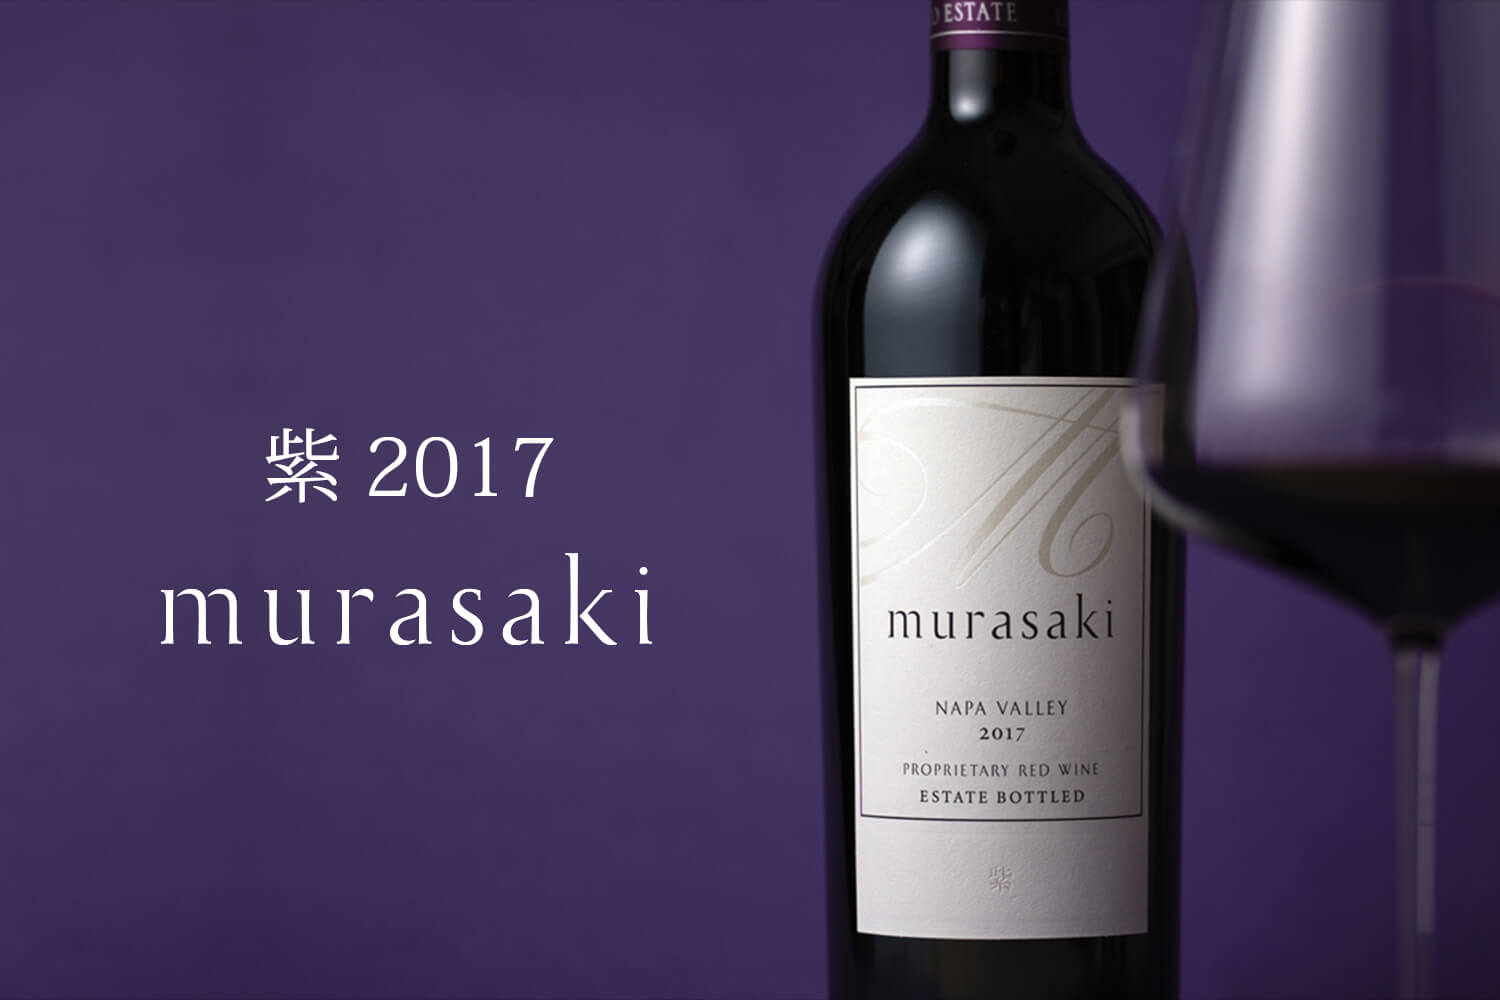 飲料・酒【新品】【正規】ケンゾーエステート紫murasaki2017フルボトル750ml